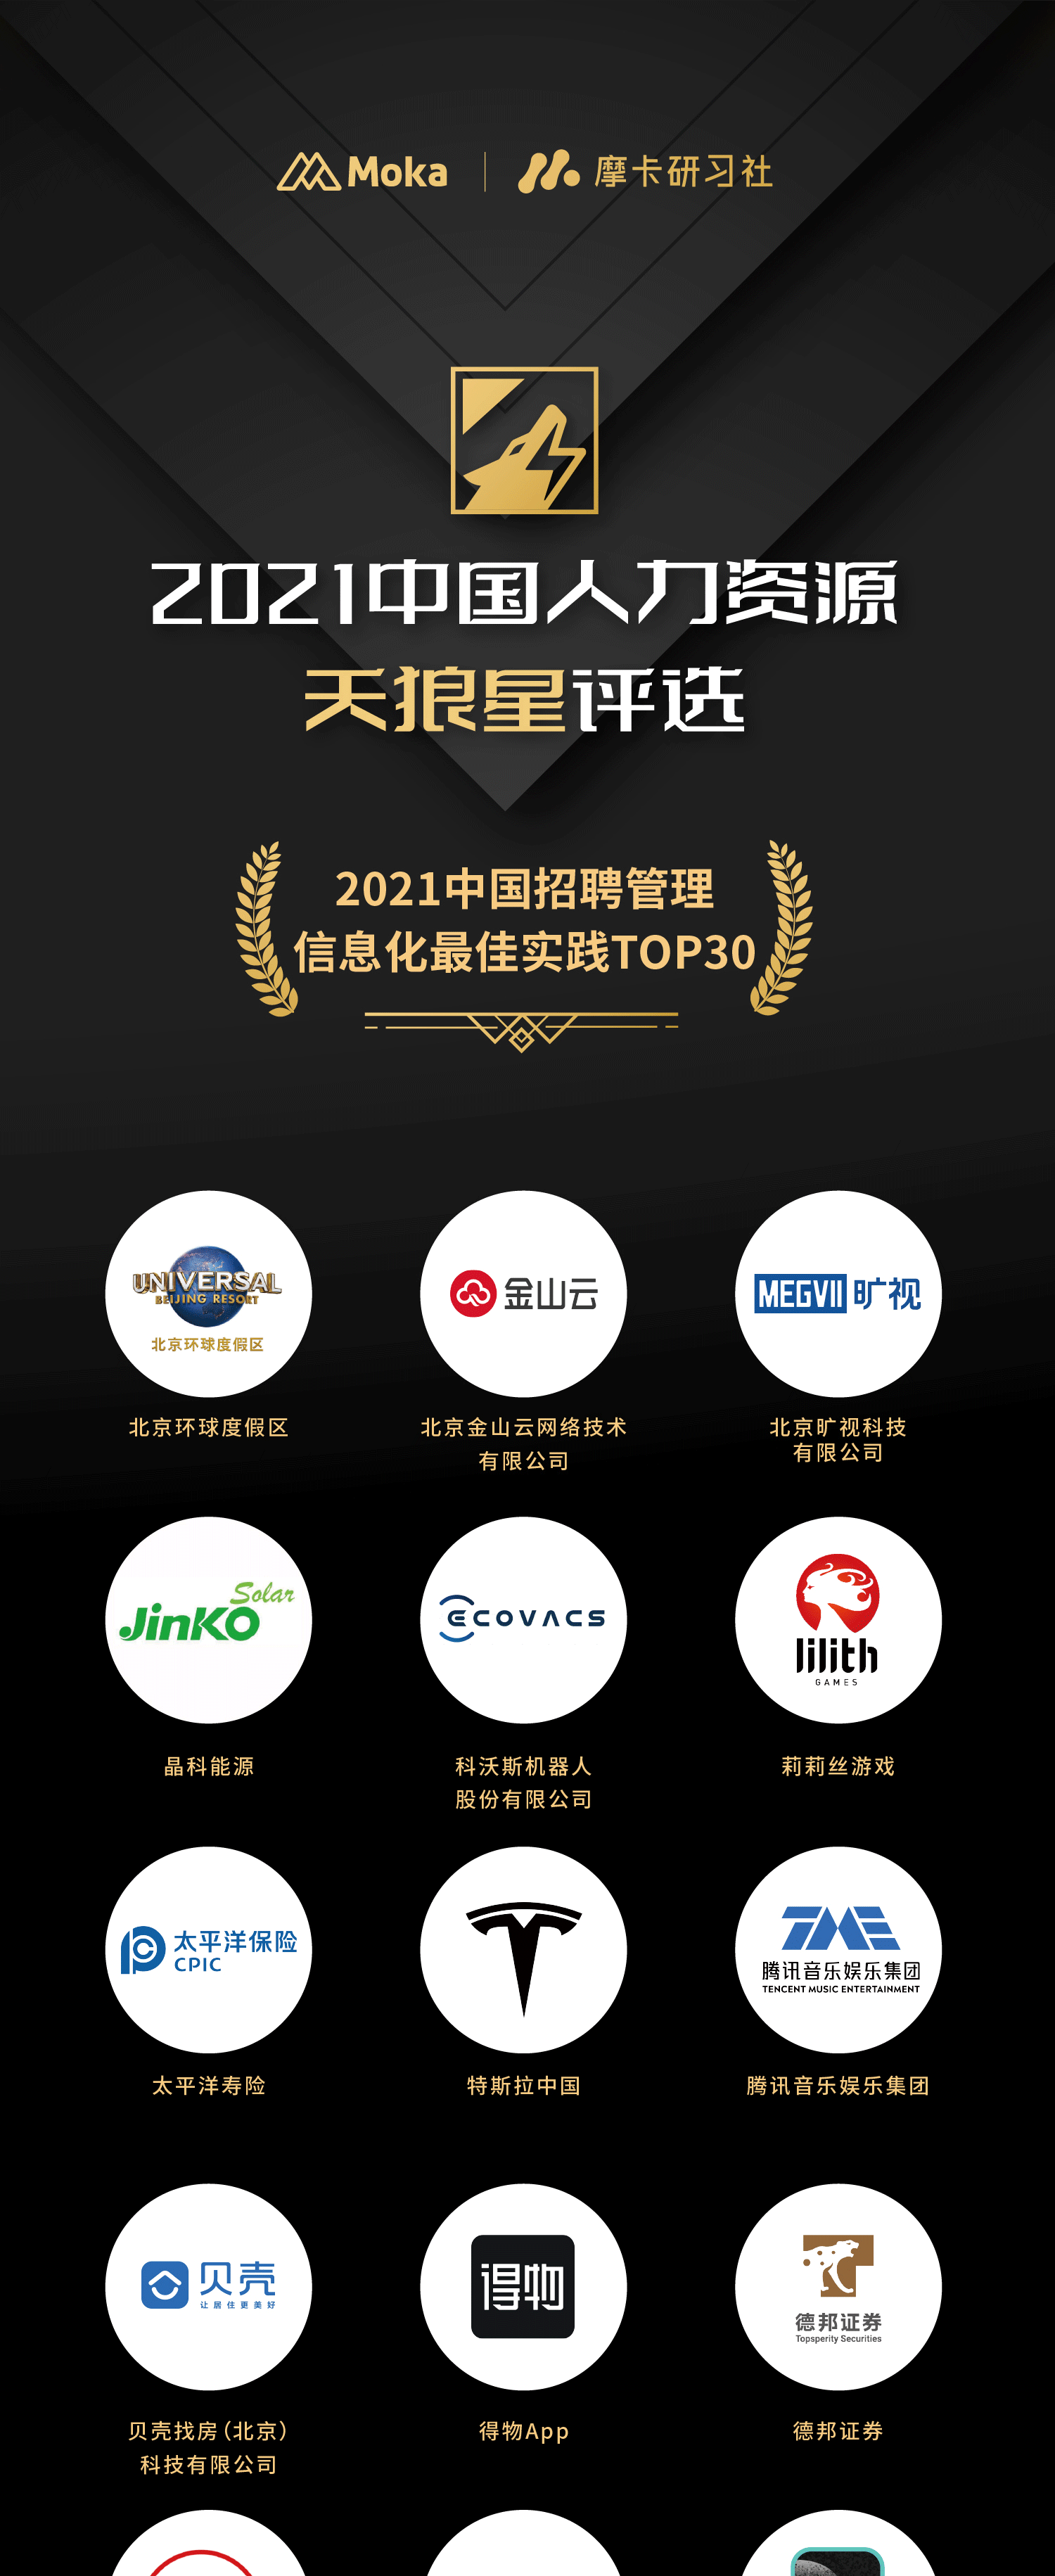 【重磅揭晓】「天狼星」2021中国招聘管理信息化最佳实践Top30-Moka官网